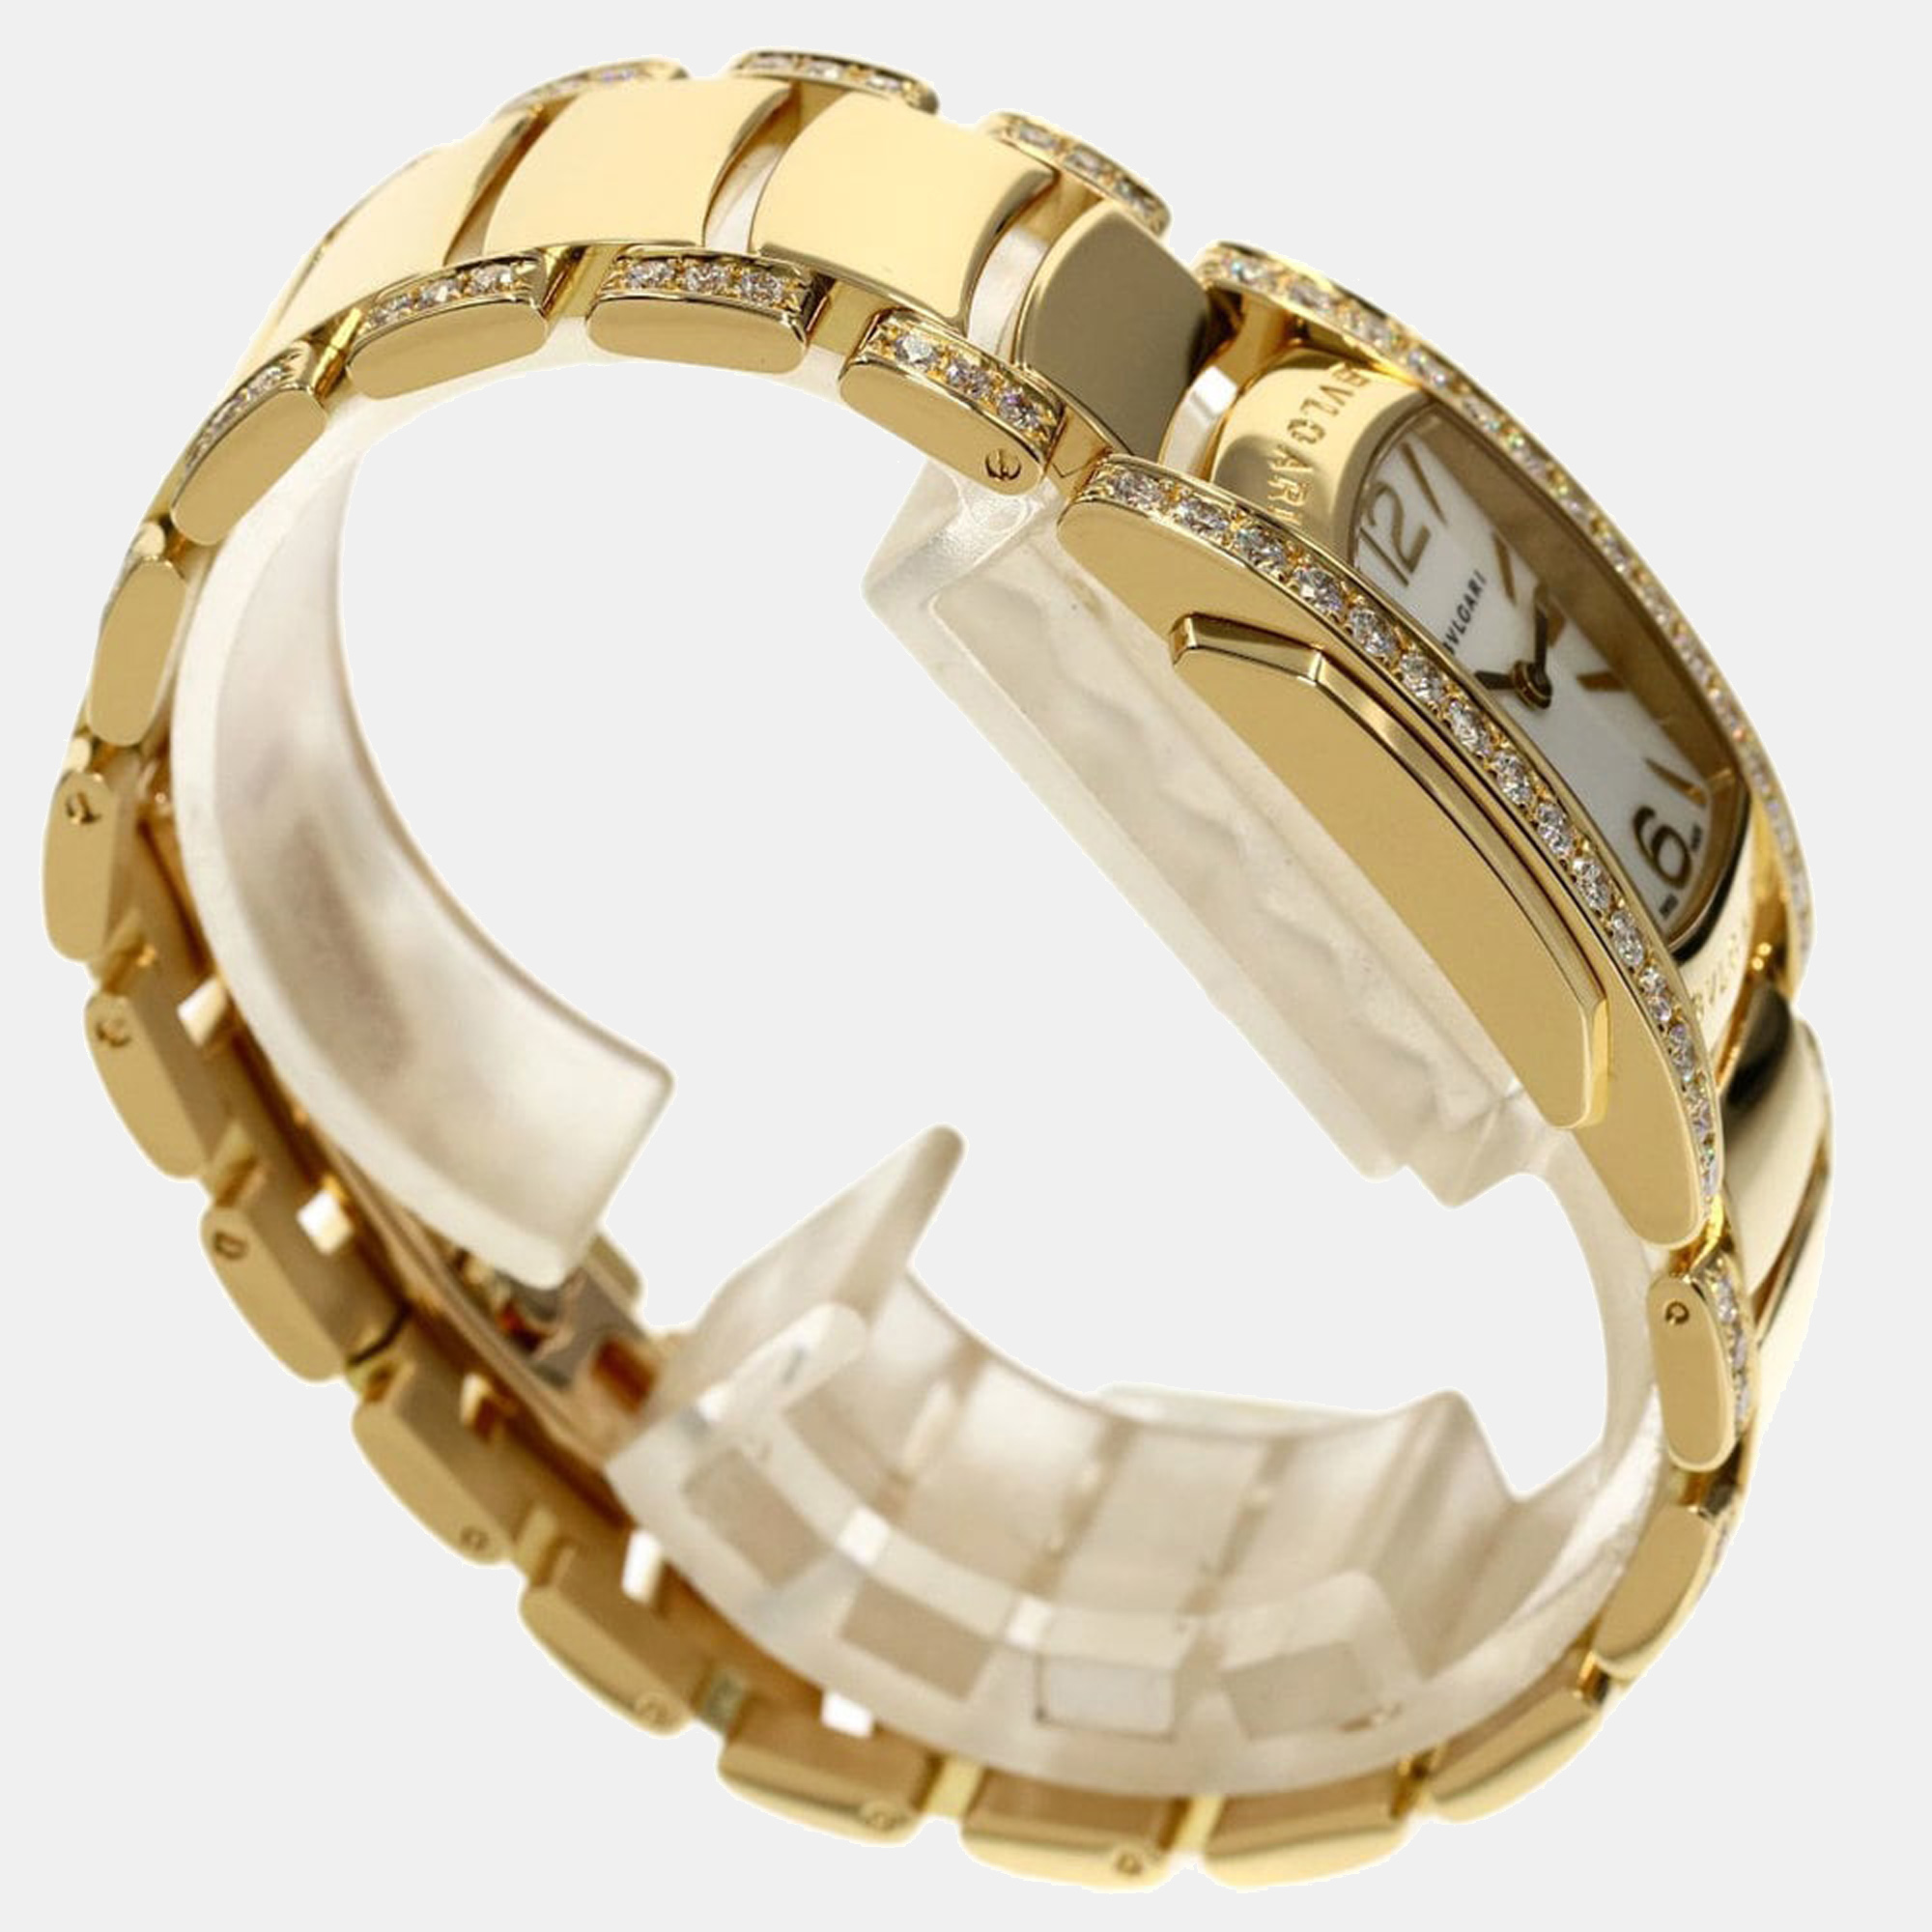 Bvlgari MOP Diamonds 18K Yellow Gold Assioma AA31G Automatic Women's Wristwatch 22 Mm